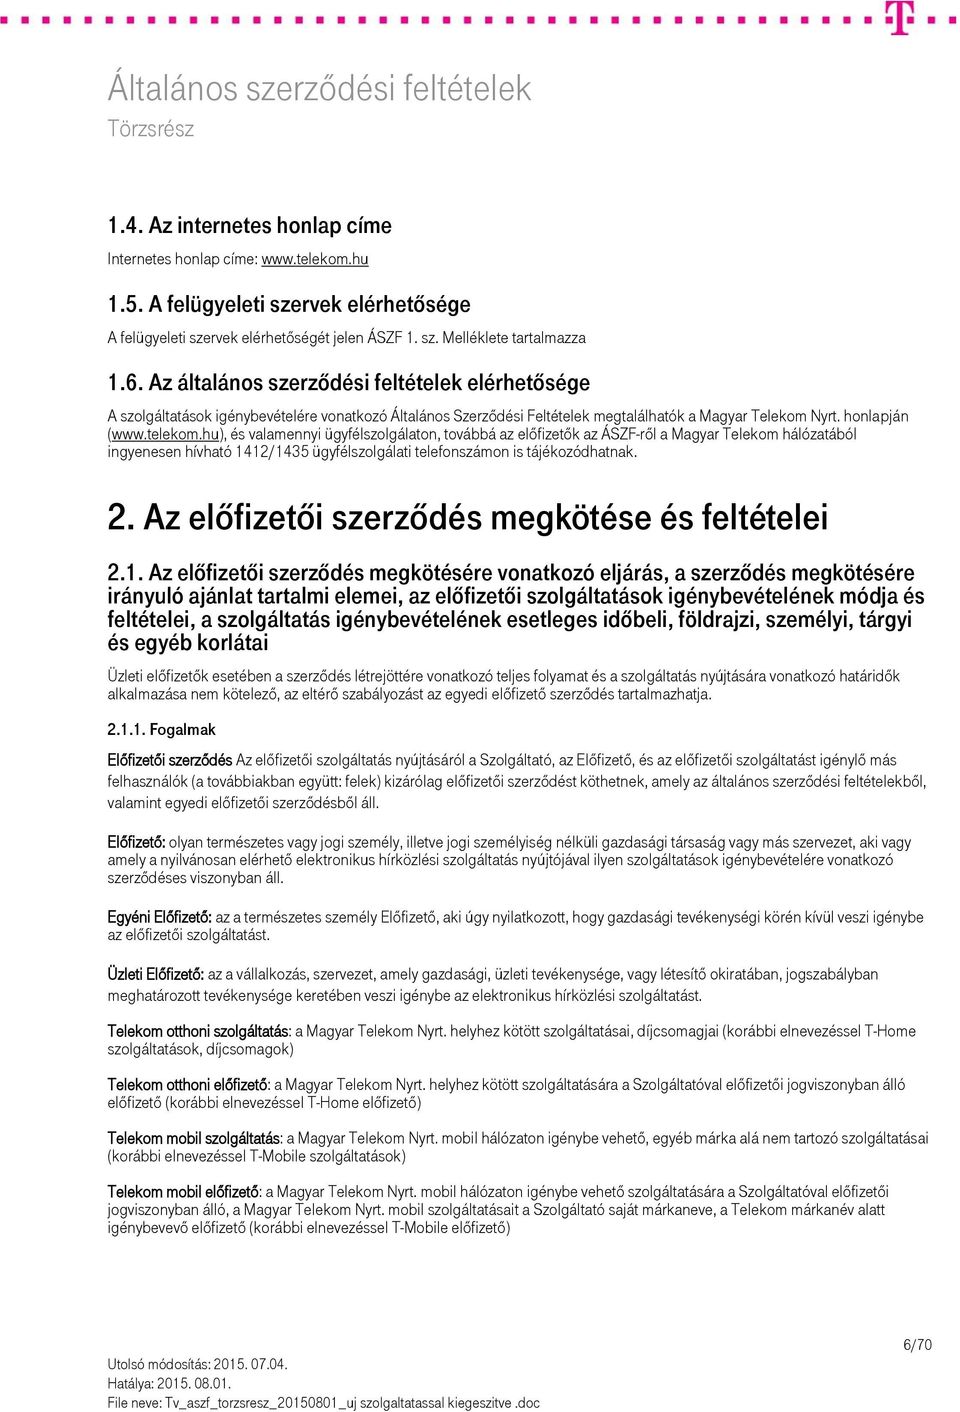 A Magyar Telekom Nyrt. helyhez kötött műsorterjesztési szolgáltatásra  vonatkozó Általános Szerződési Feltételei (rövid neve: TV ÁSZF) - PDF  Ingyenes letöltés